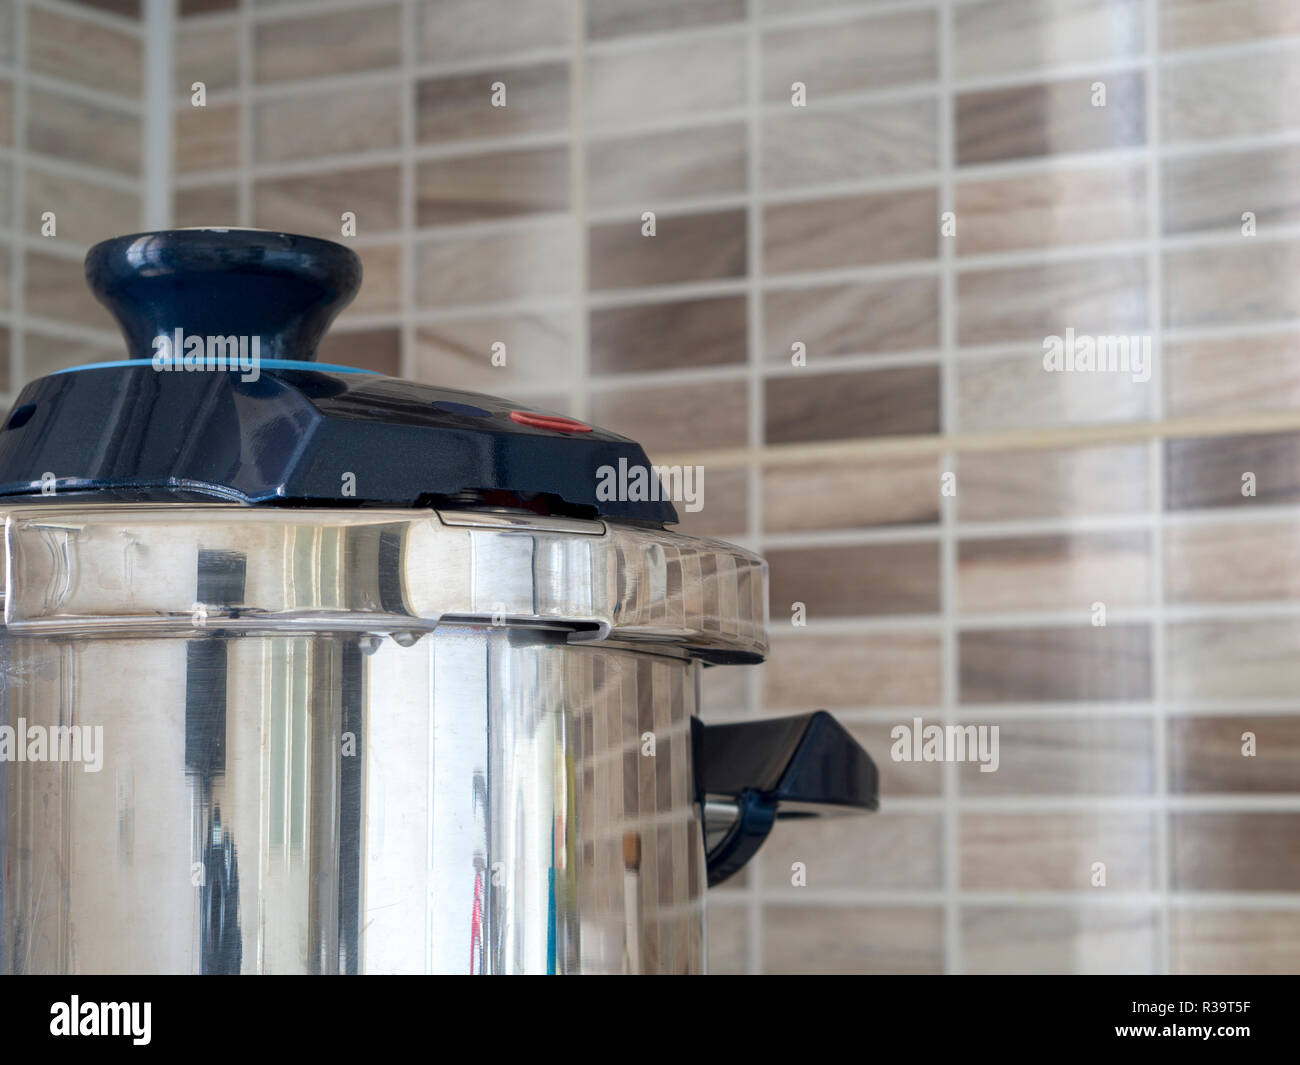 metallic steel pressure cooker standing on oven in kitchen Stock Photo